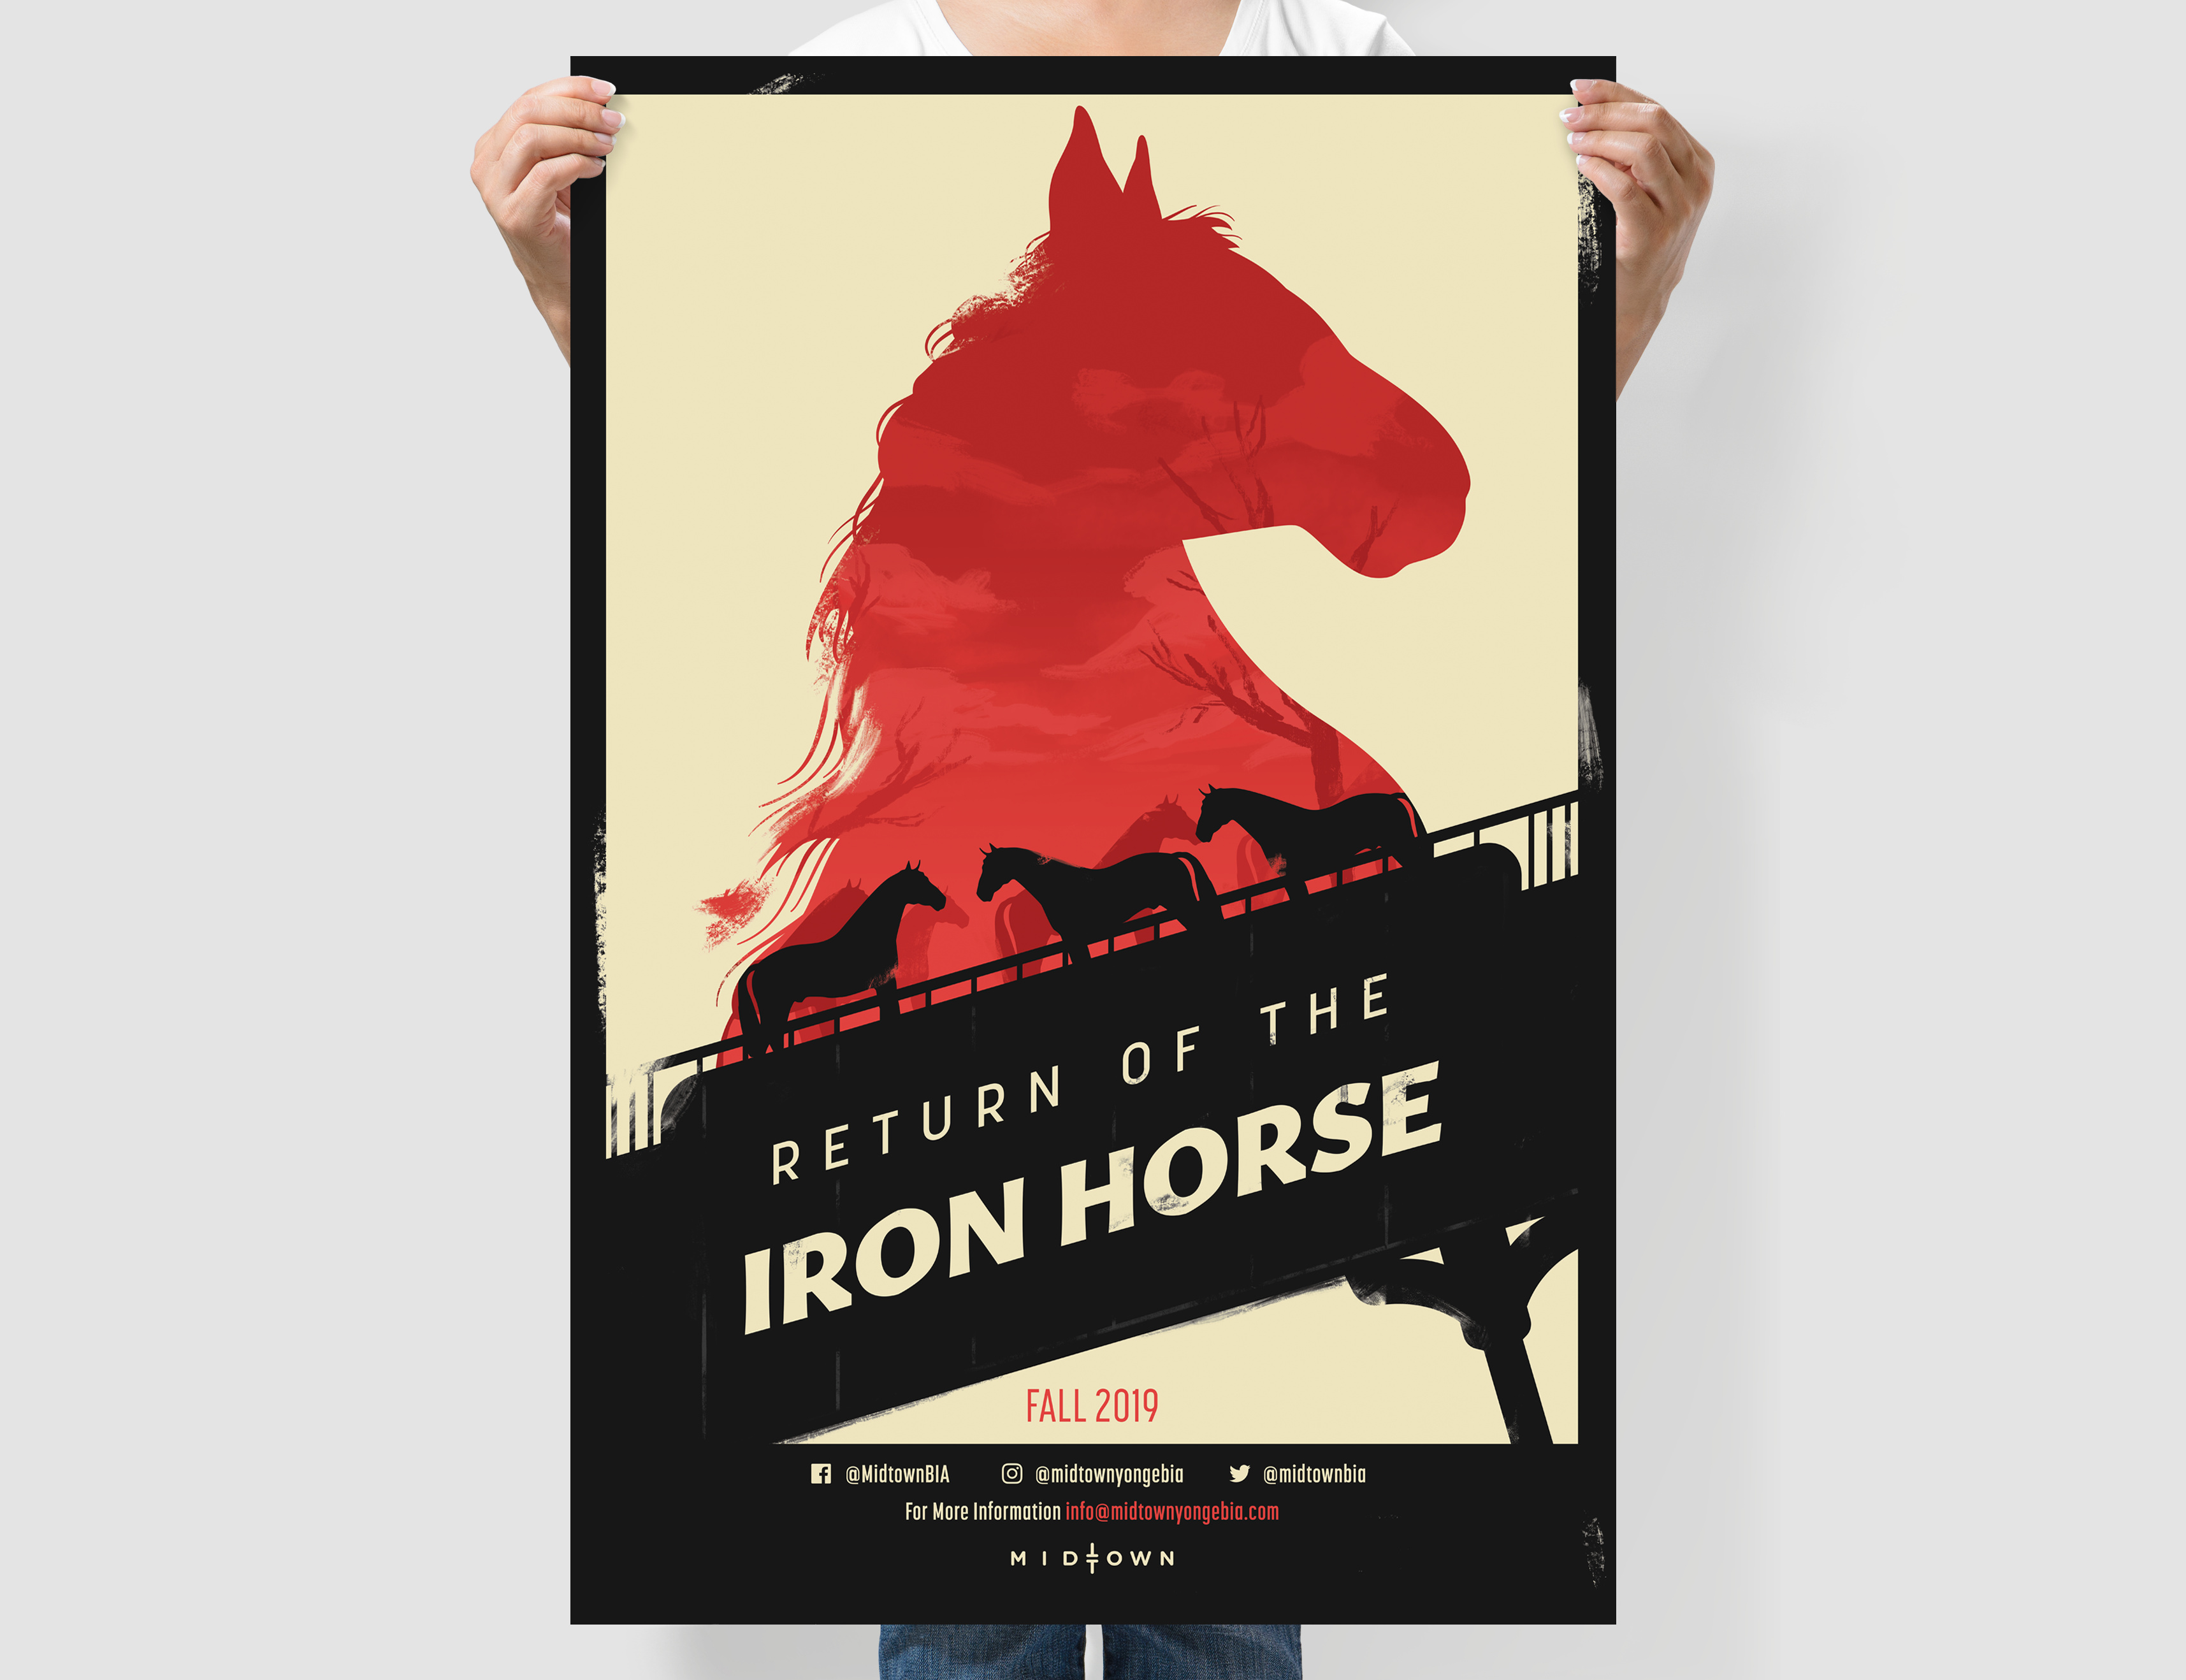 une personne brandissant une affiche imprimée personnalisée d'un film sur les chevaux